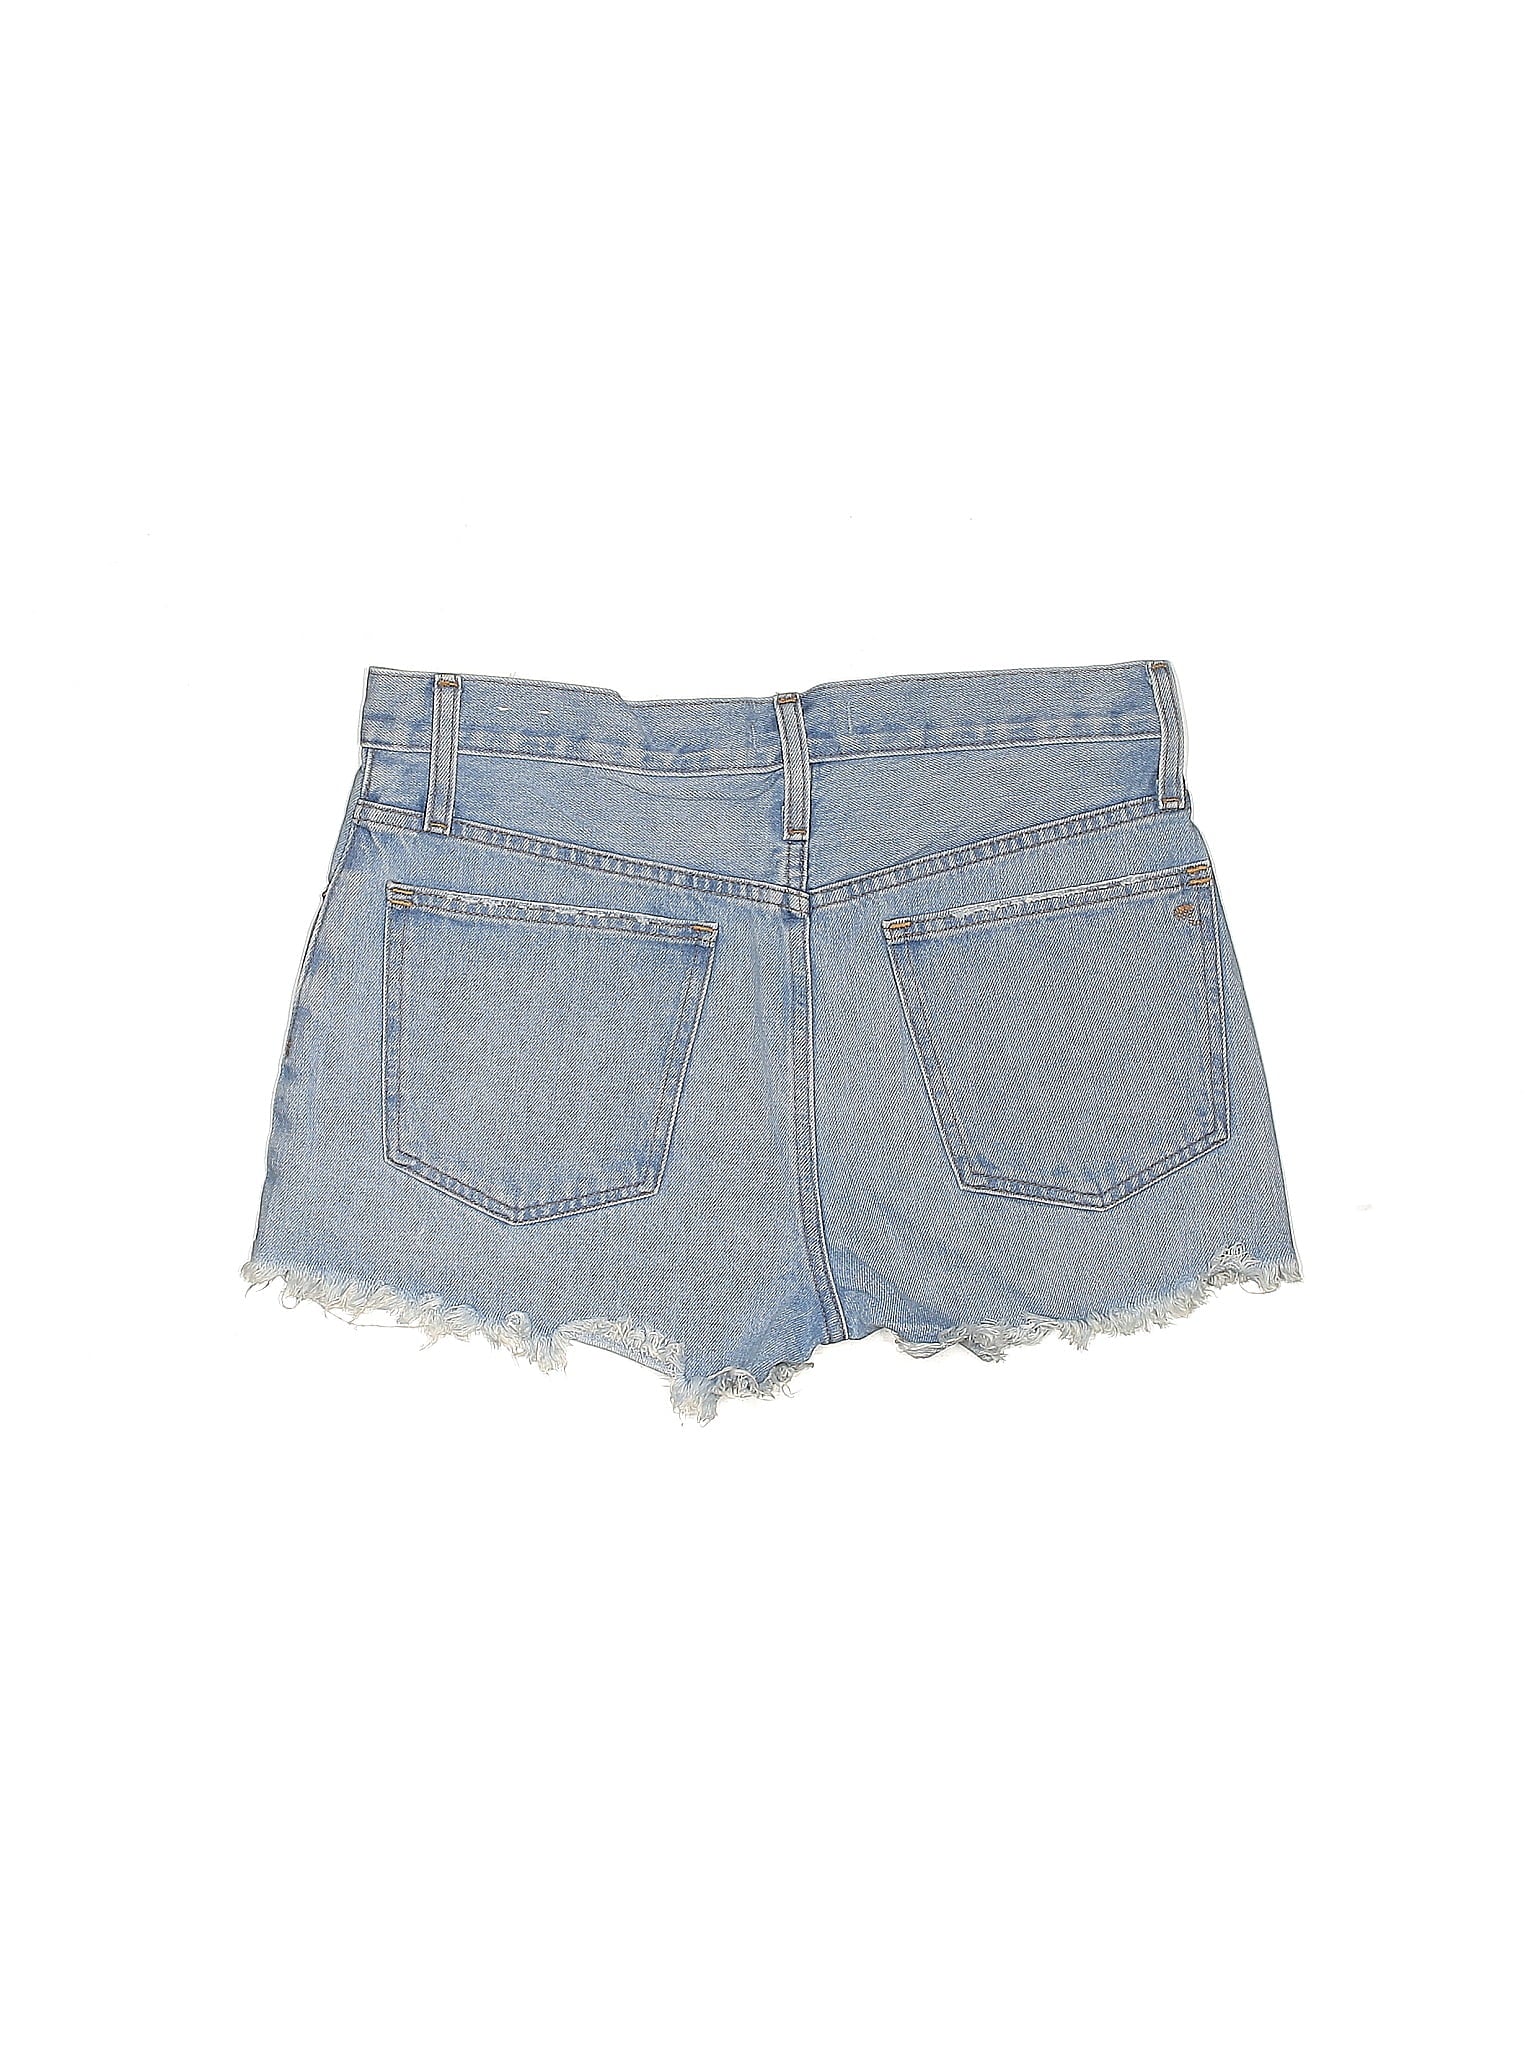 High-Rise Denim Shorts in Light Wash waist size - 28